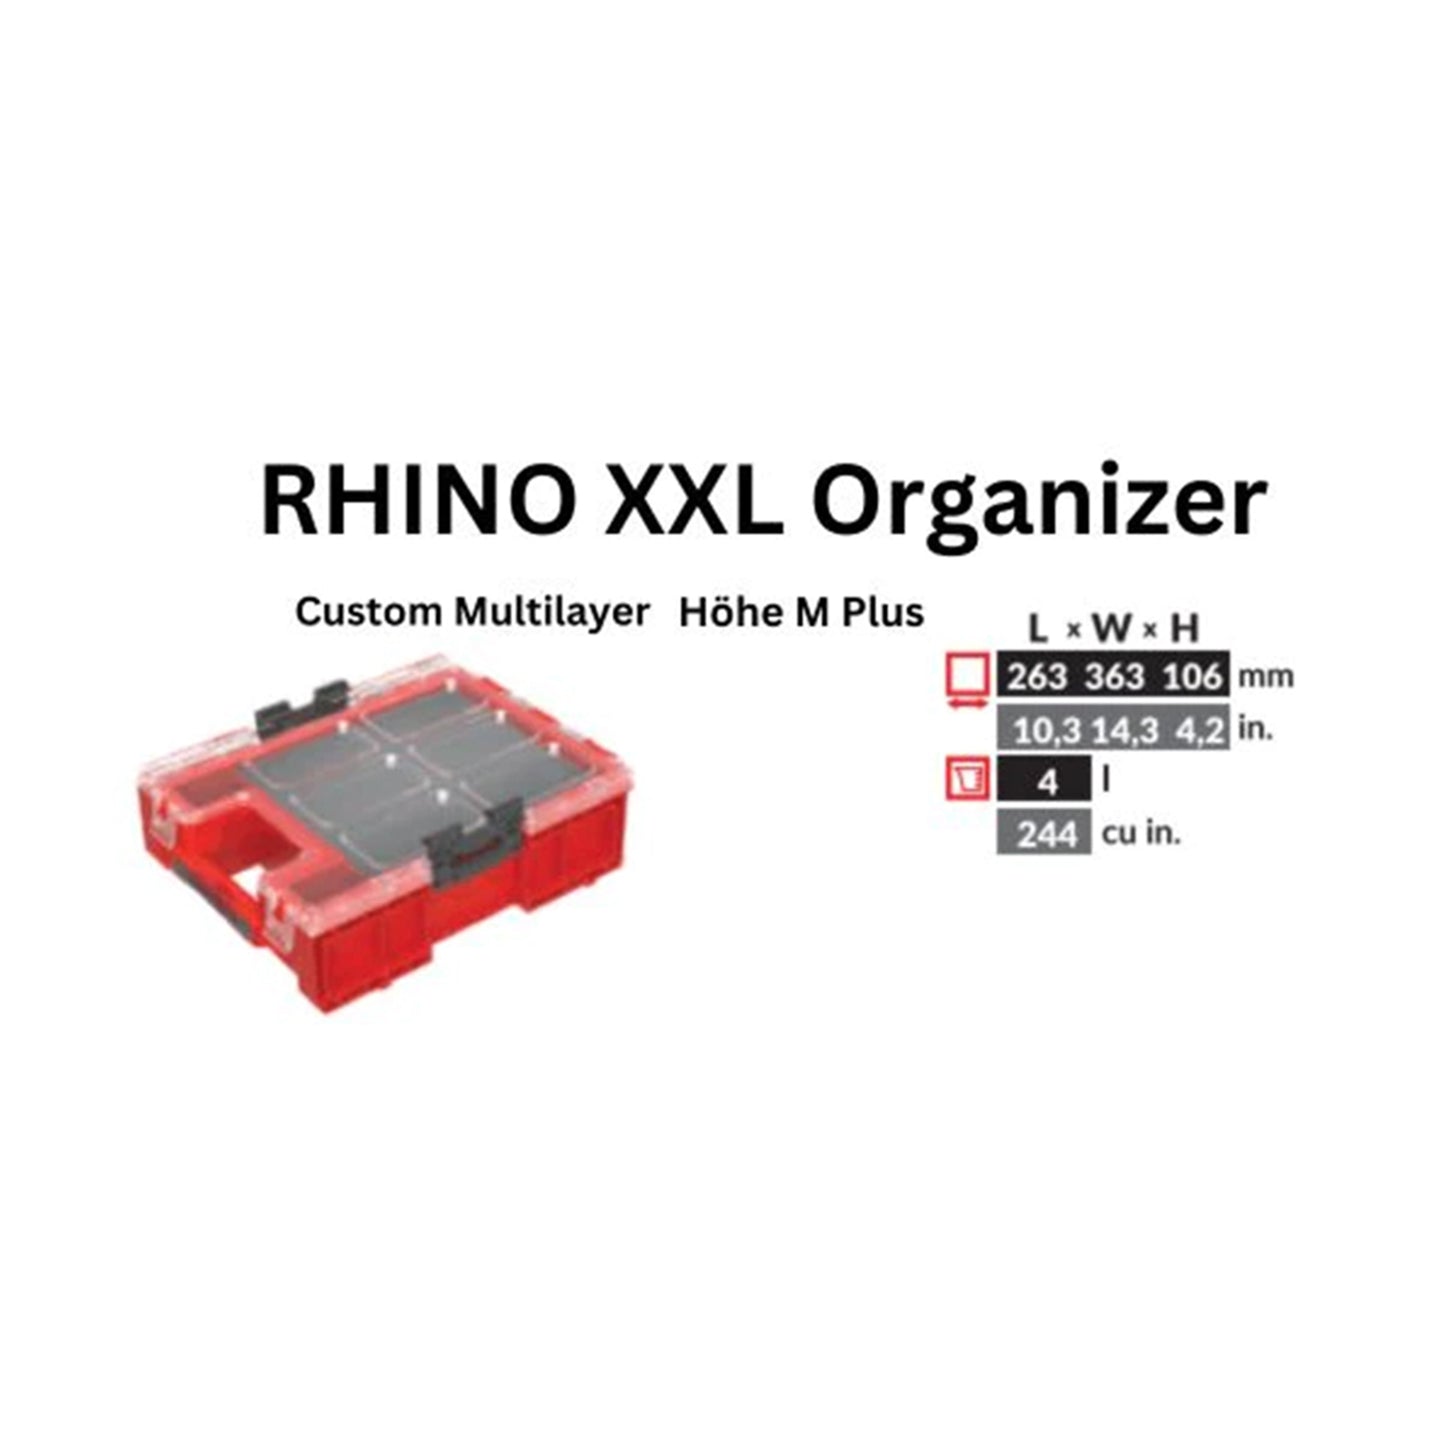 Toolbrothers RHINO XXL Organizer ULTRA Höhe M Plus Custom Multilayer 364 x 264 x 106 mm 4 l stapelbar IP66